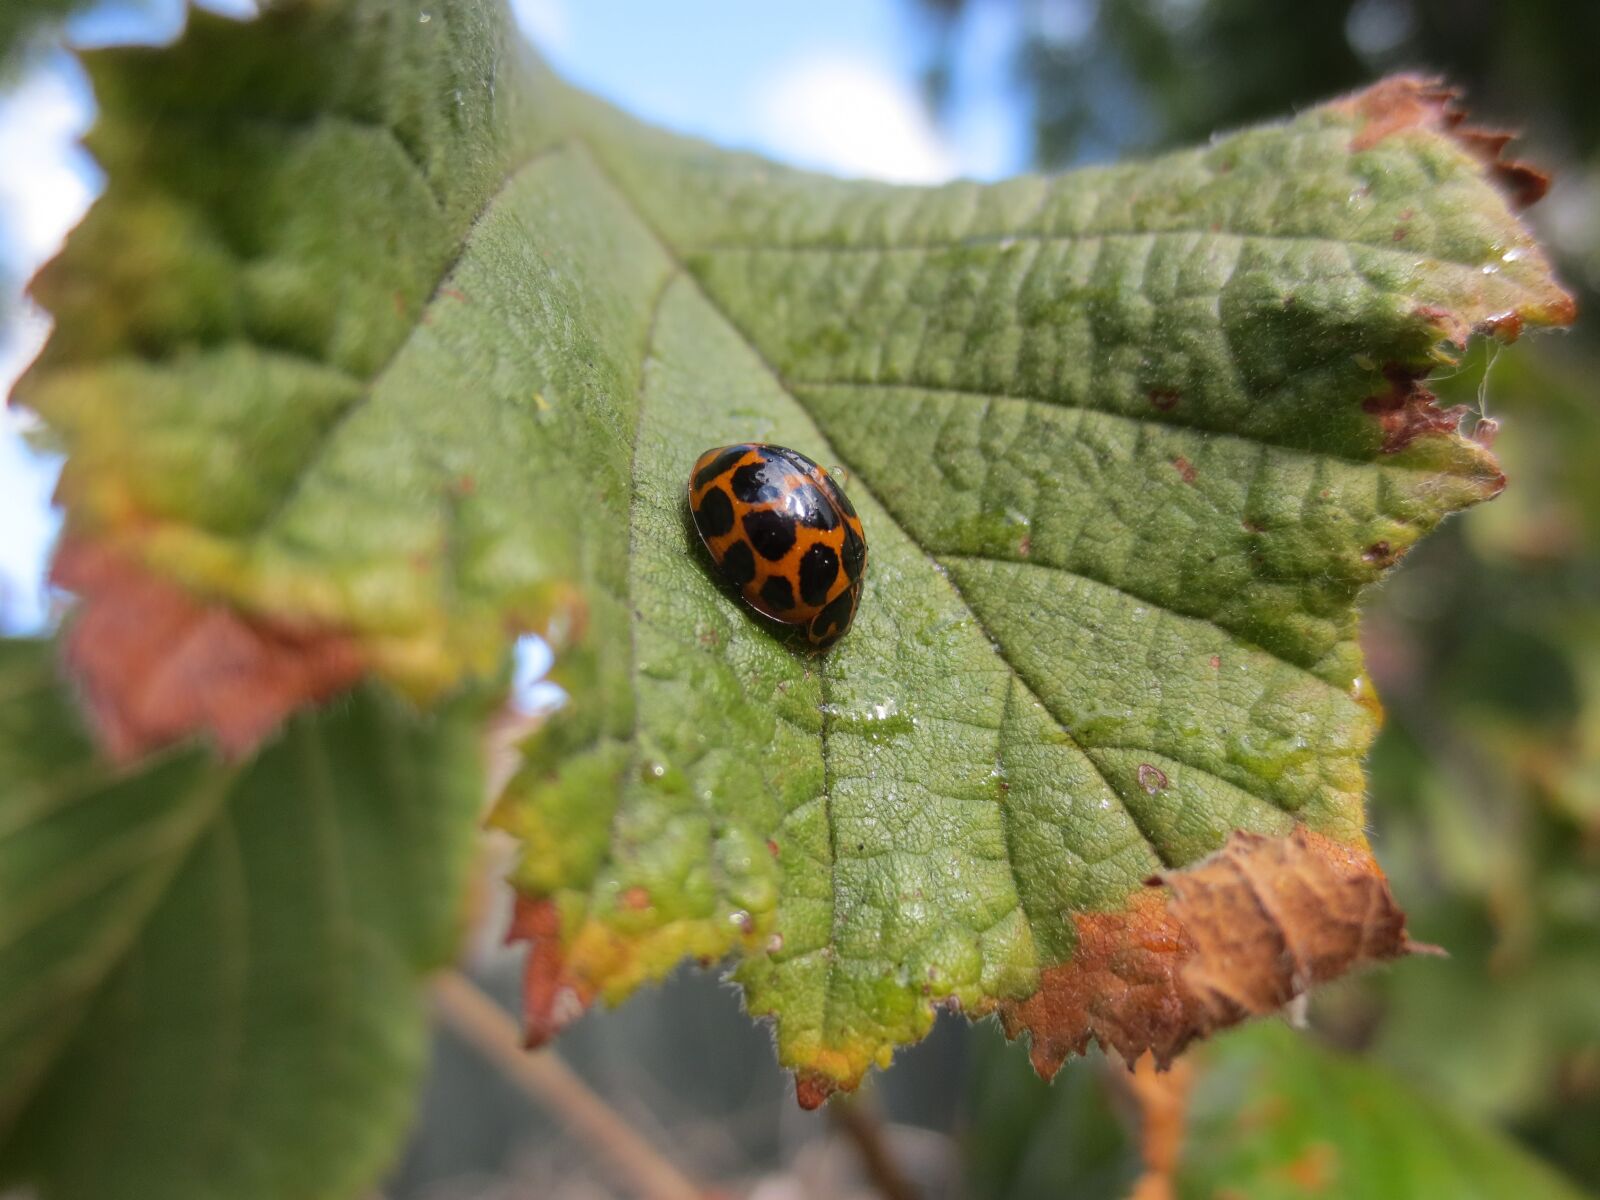 Canon IXUS 240 HS sample photo. Ladybird, ladybug, beetle photography